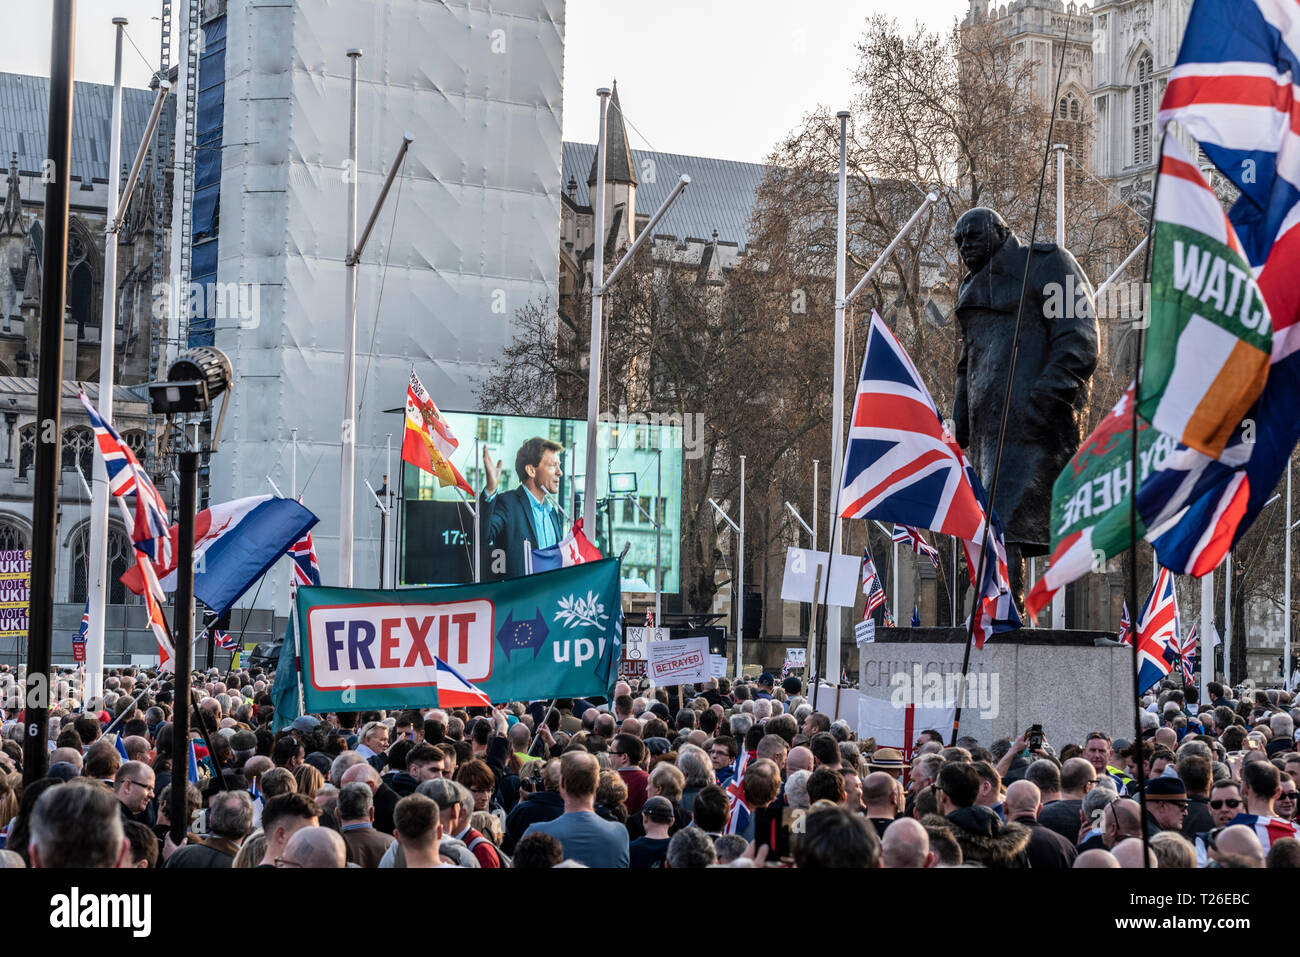 Las multitudes de gente en el Brexit traición de marzo en Londres, Reino Unido. EU Referendum demostración rally fuera de Westminster, con Winston Churchill estatua Foto de stock